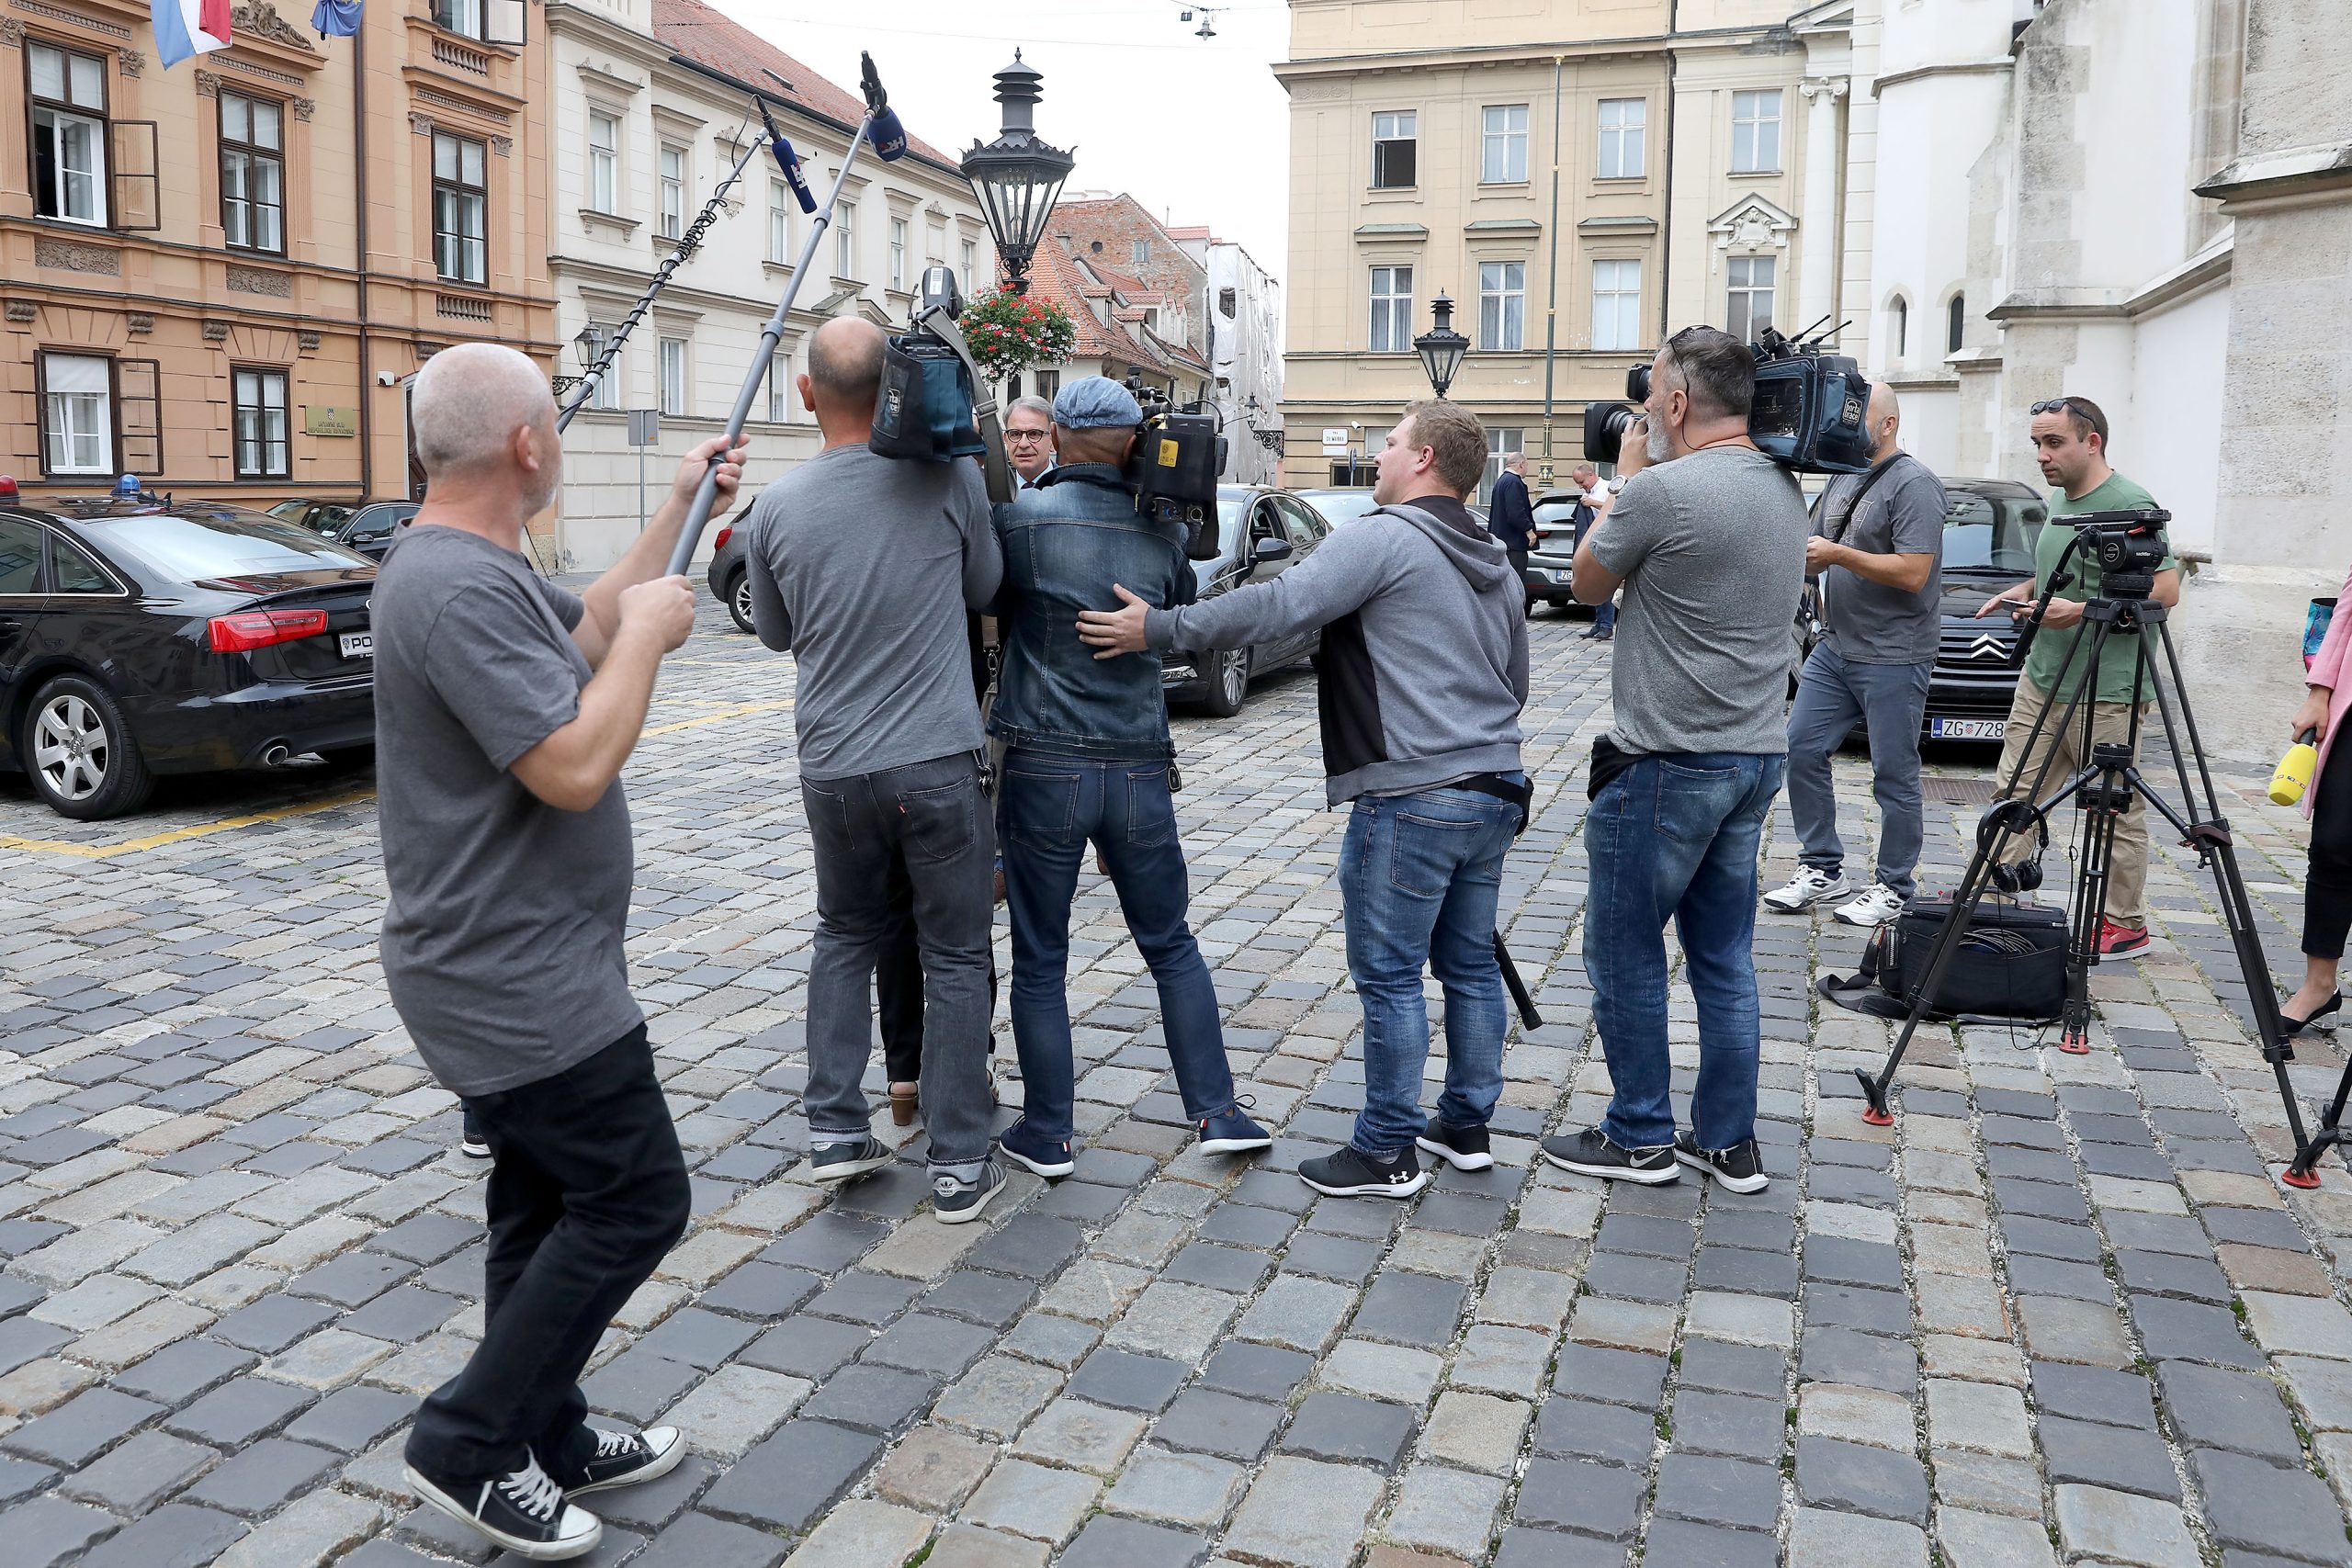 12.09.2019., Zagreb - Novinari i snimatelji cekaju ministre ispred Banskih dvora.
Photo: Patrik Macek/PIXSELL